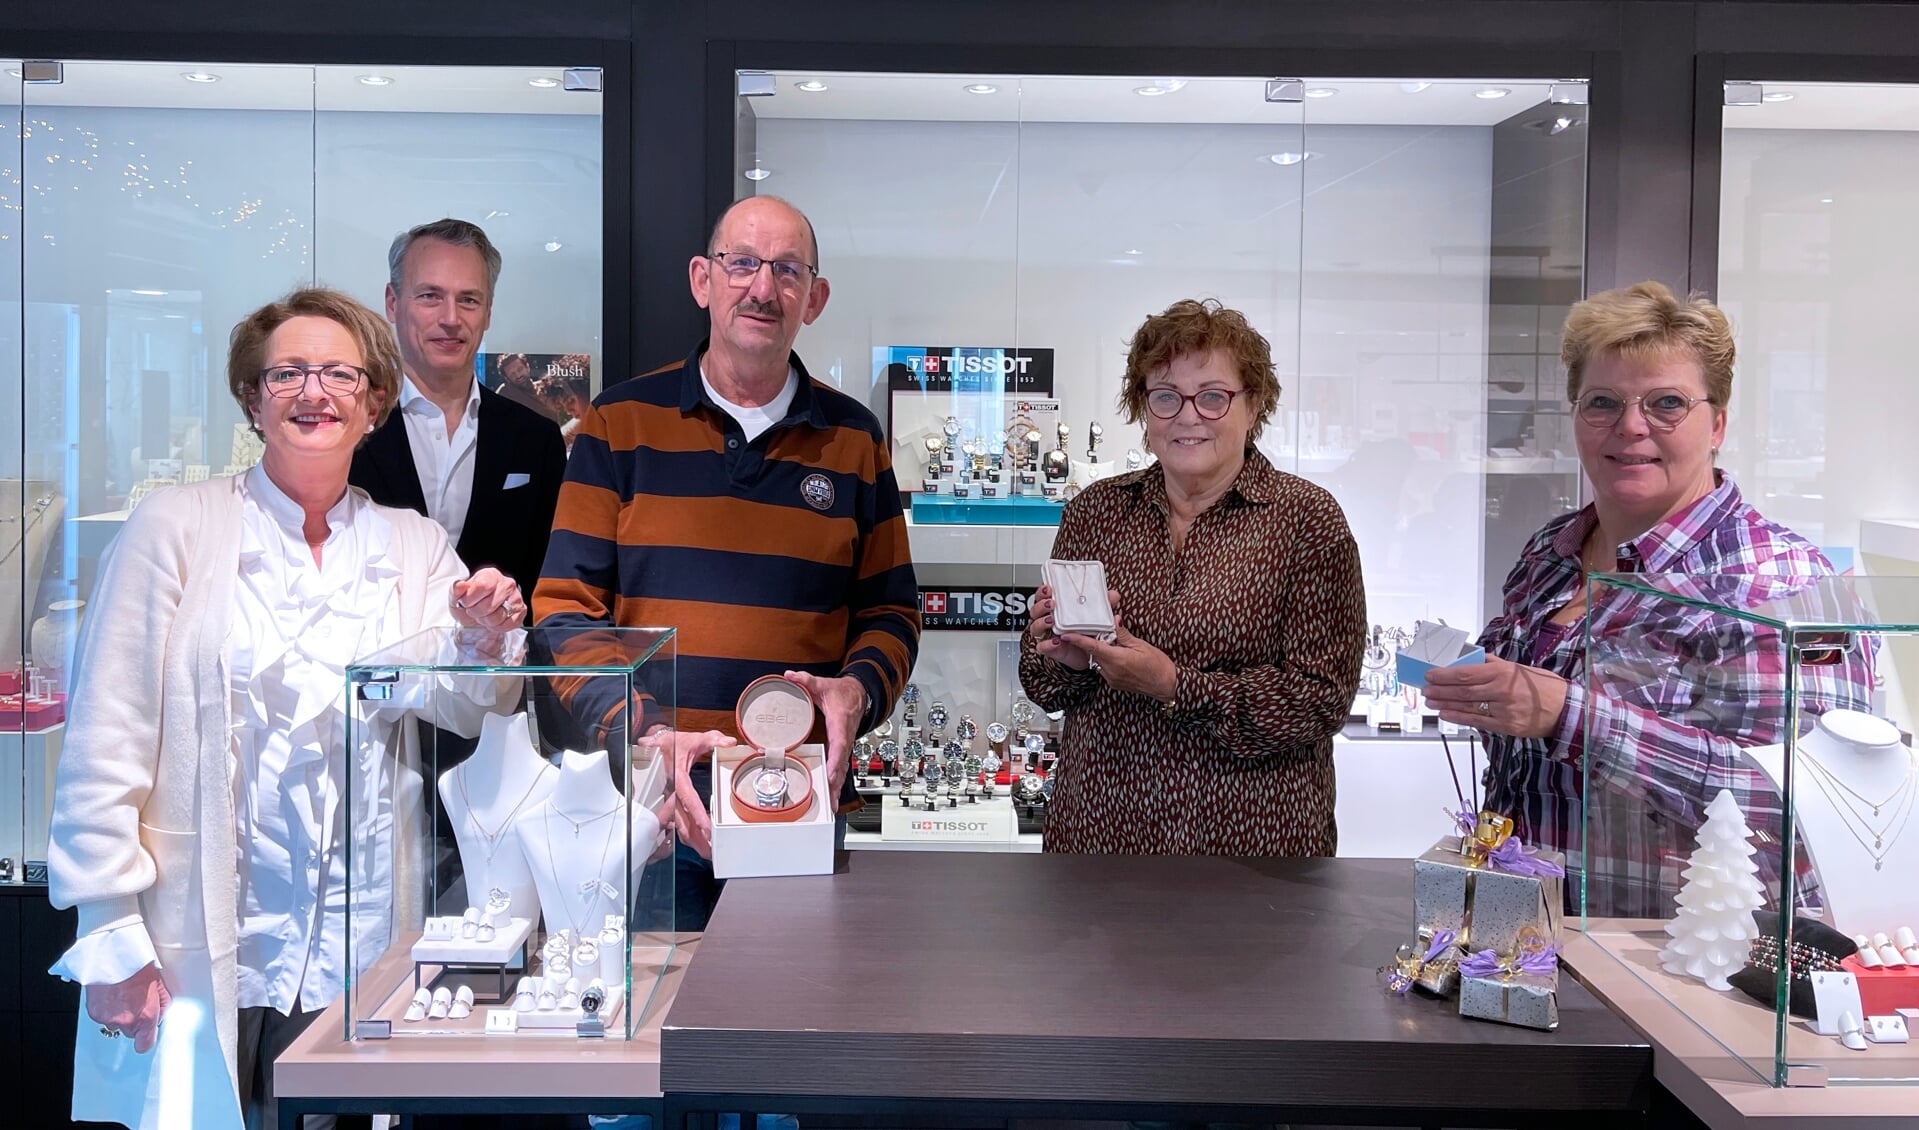 Blije gezichten bij de prijswinnaars van Niestadt Juweliers. Zij konden hun prijzen afgelopen zaterdag ophalen in de winkel.